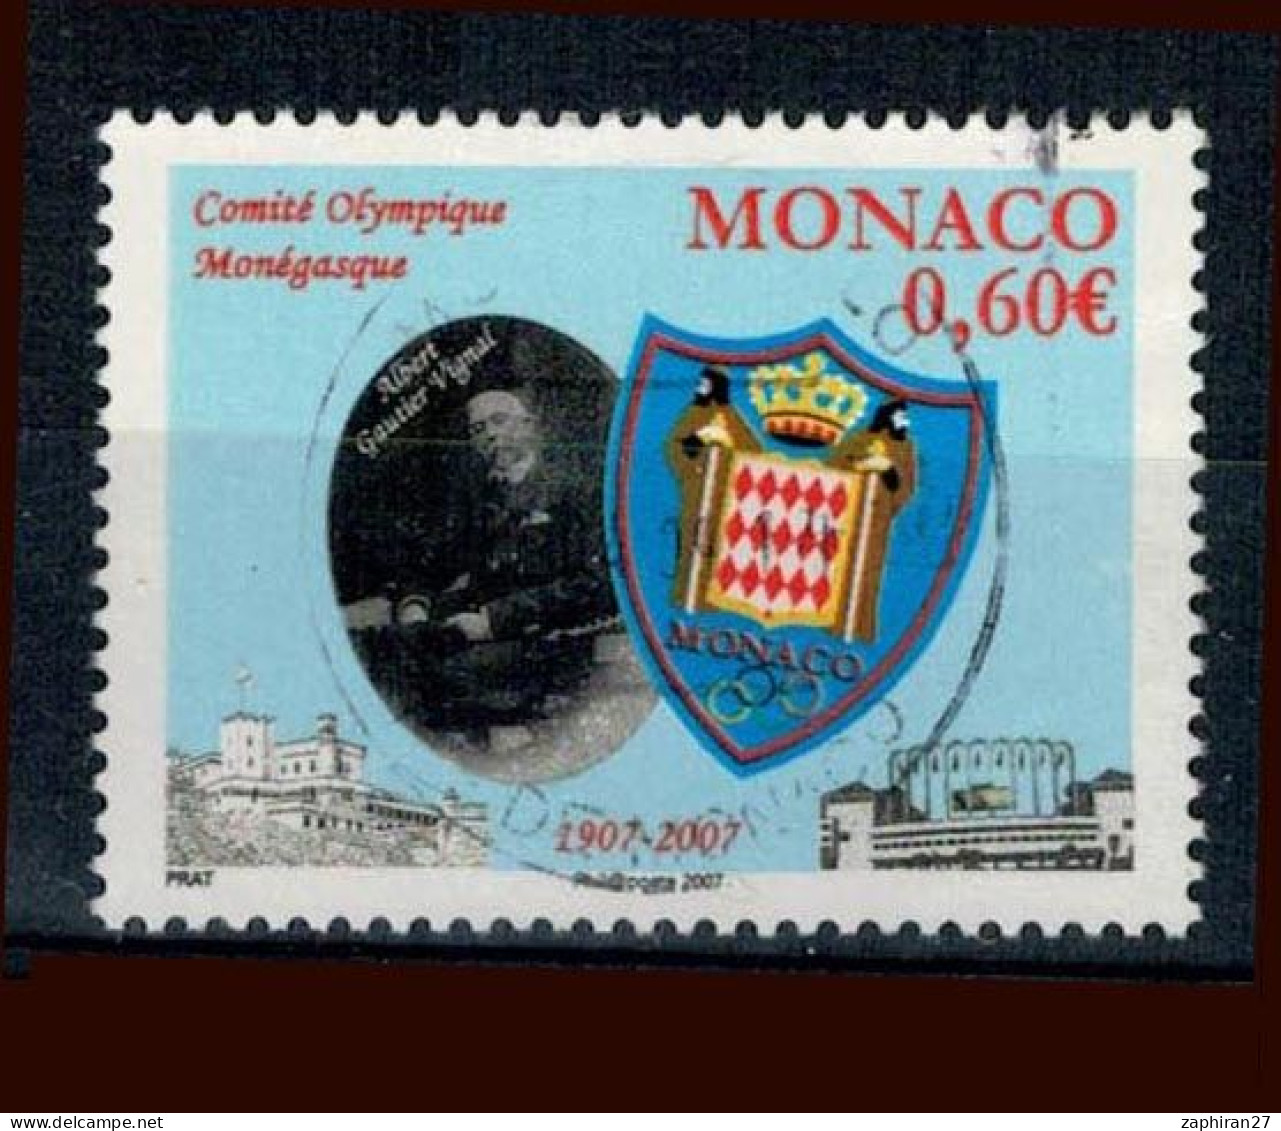 2007 MONACO COMITE OLYPIQUE MONEGASQUE OBLITERE  #234# - Used Stamps